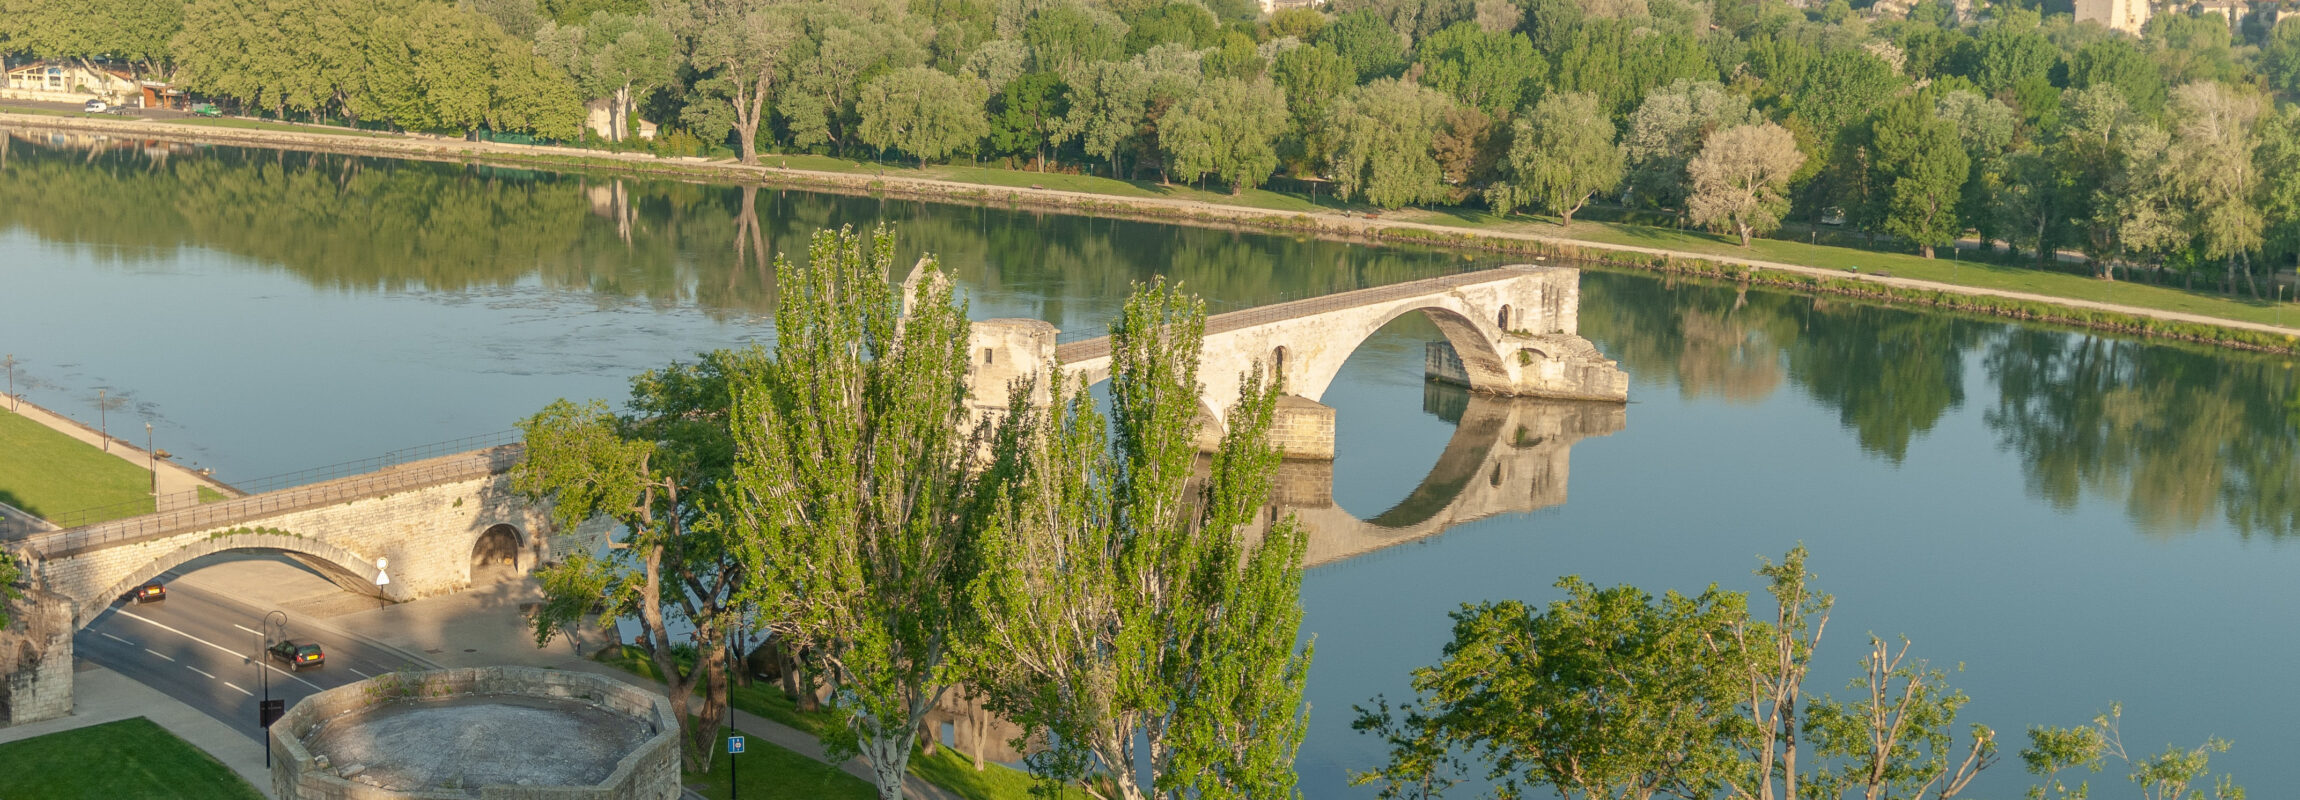 Photo du Pont d'Avignon en Provence.